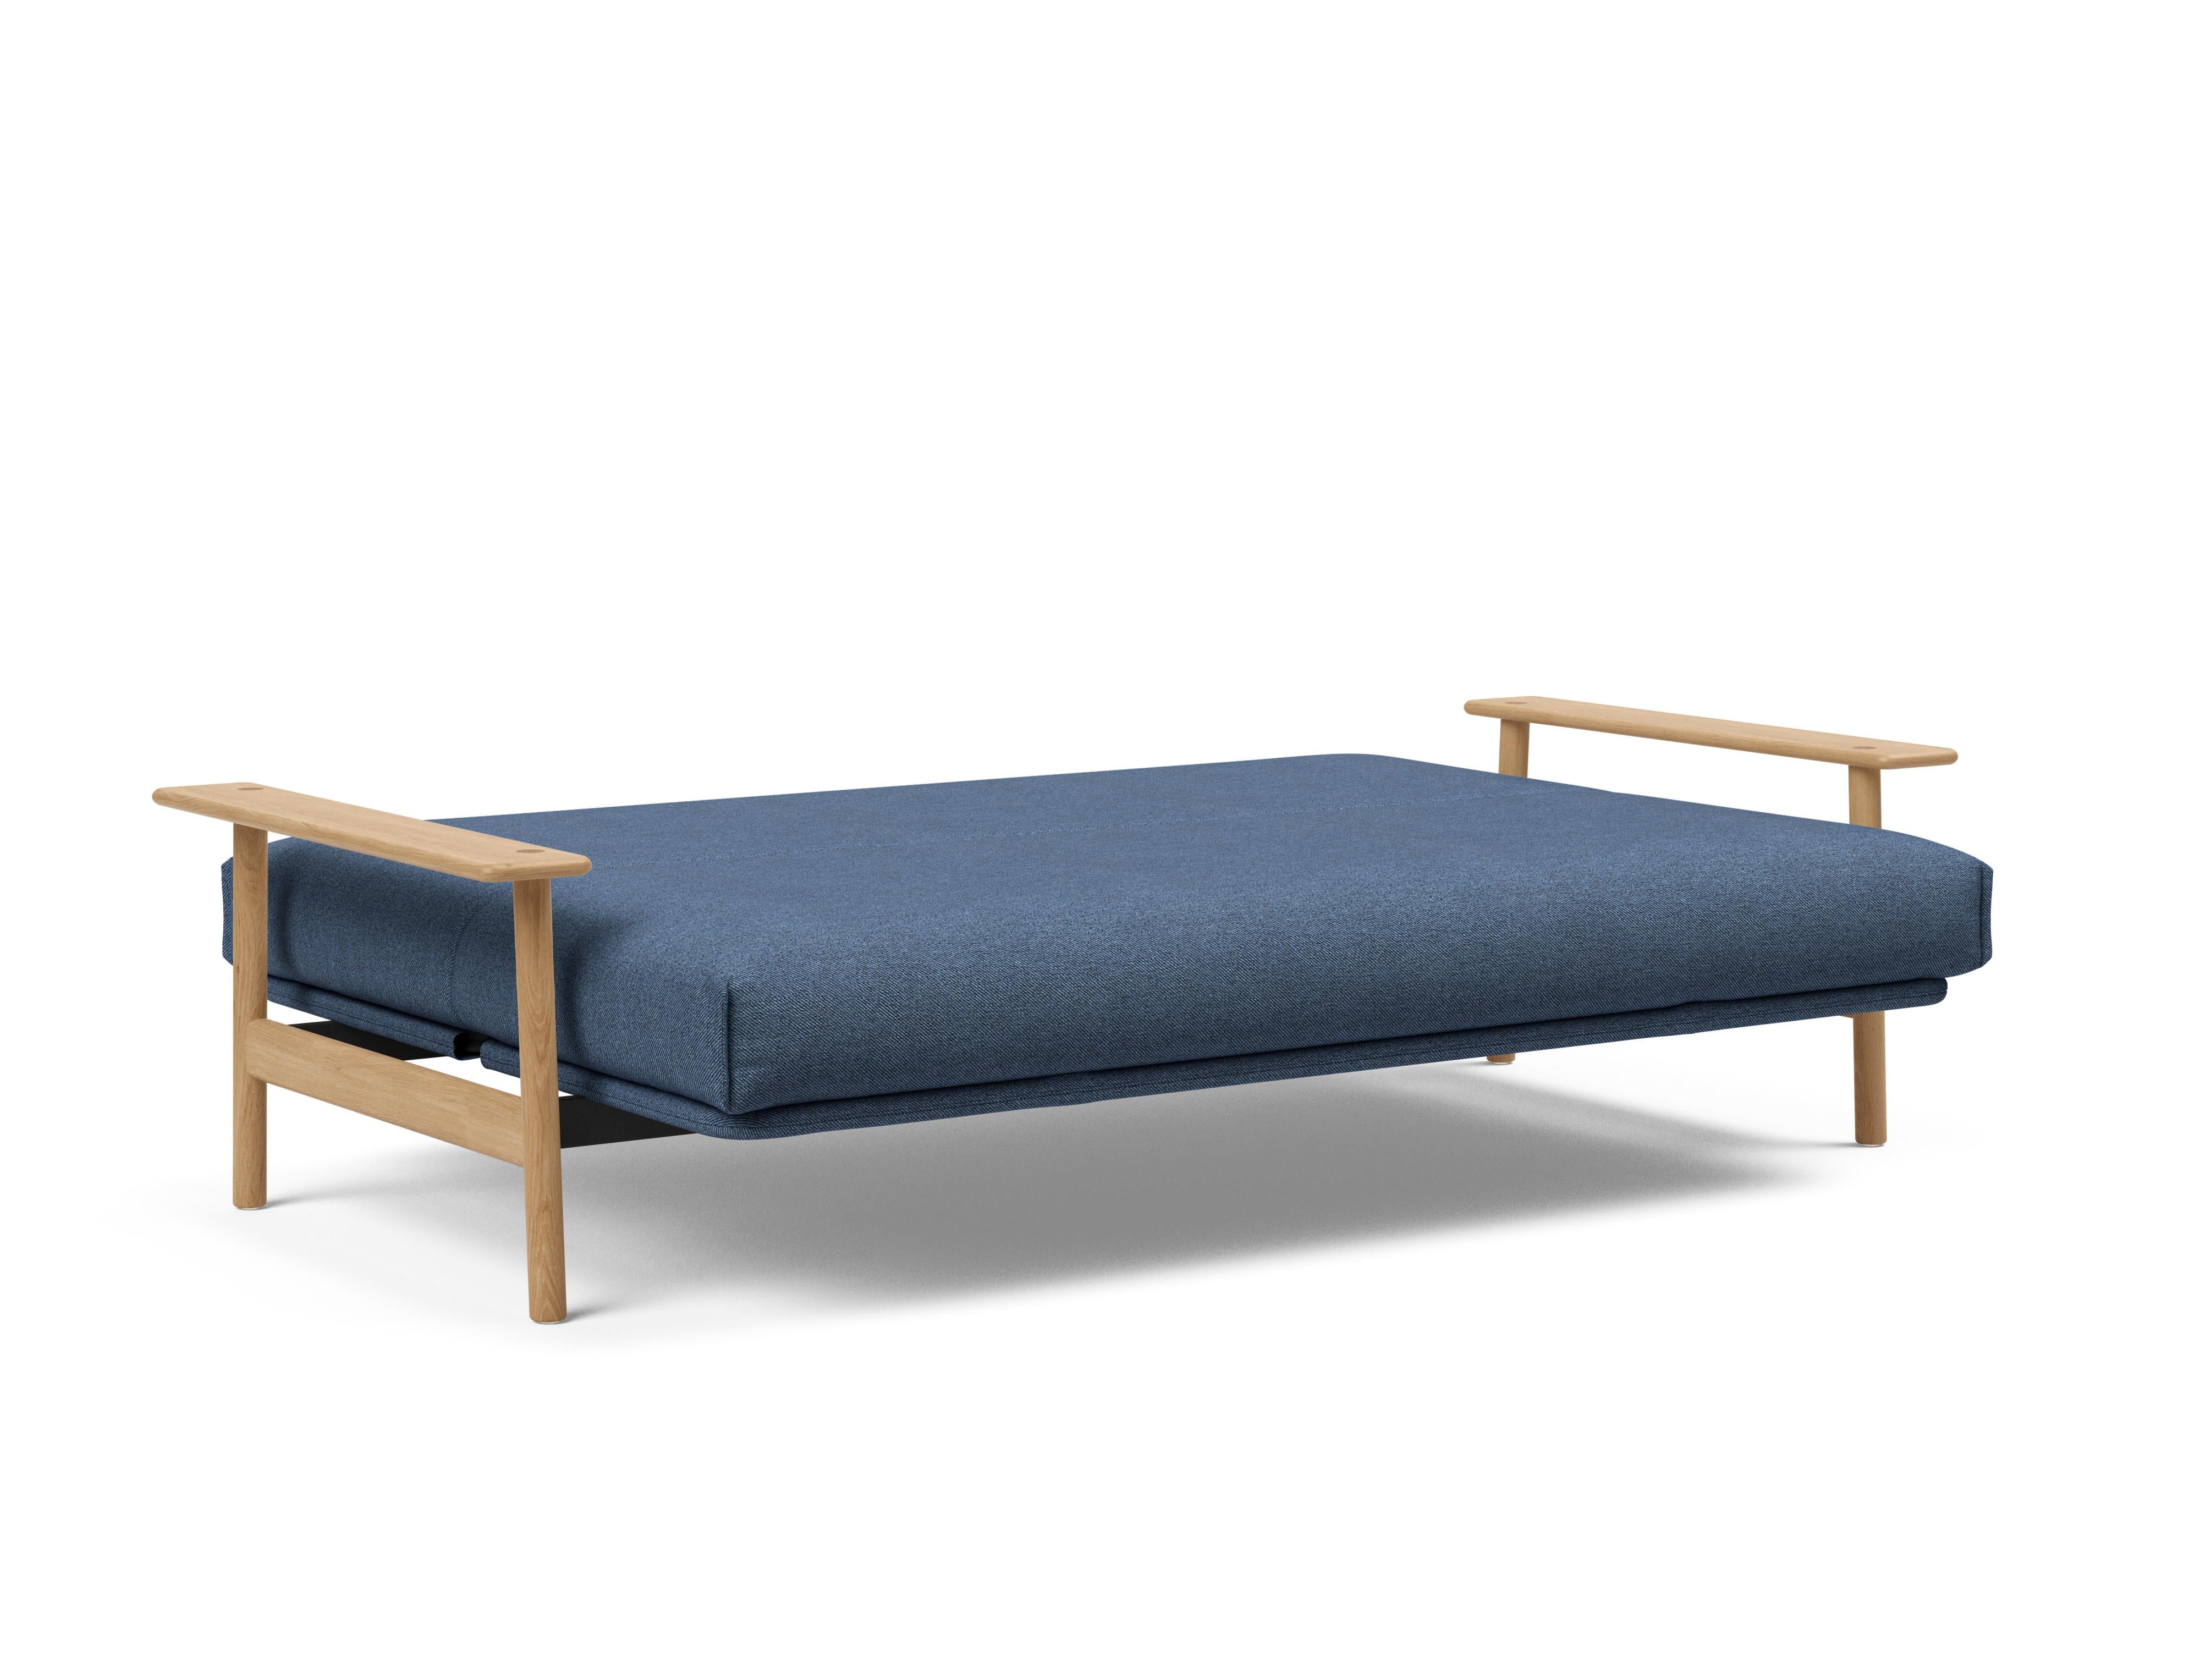 Balder Bettsofa Nordic in Blau 302 präsentiert im Onlineshop von KAQTU Design AG. Bettsofa ist von Innovation Living